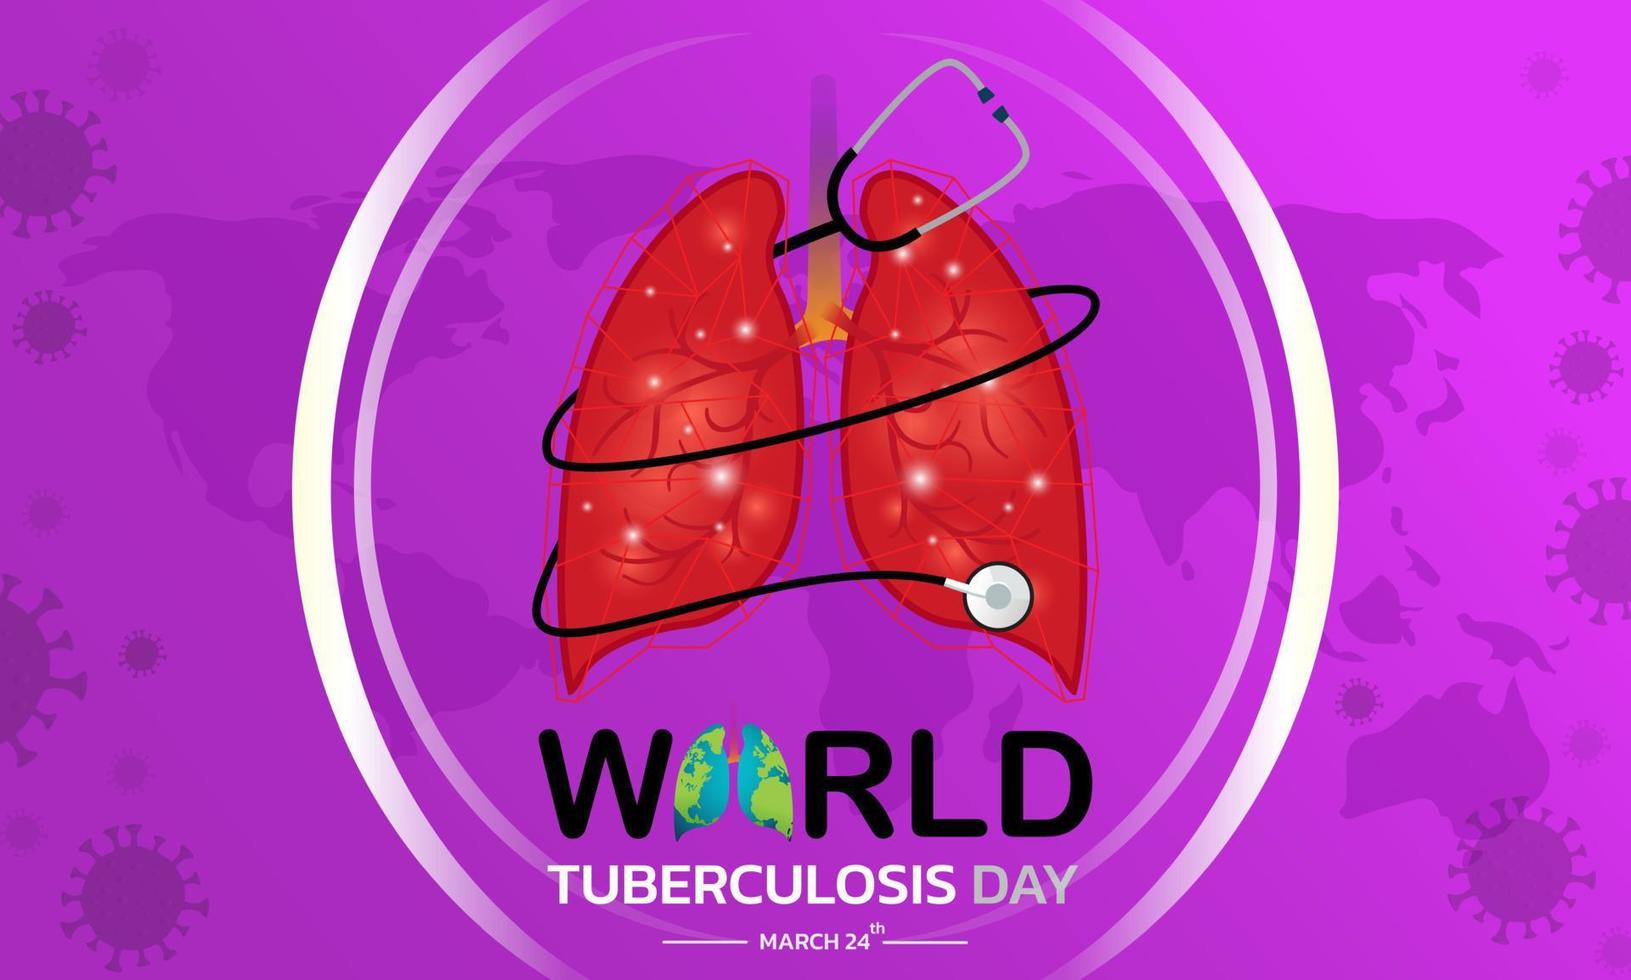 wereld tuberculosedag 24 maart. medisch solidariteitsdagconcept. vectorillustratie. vector